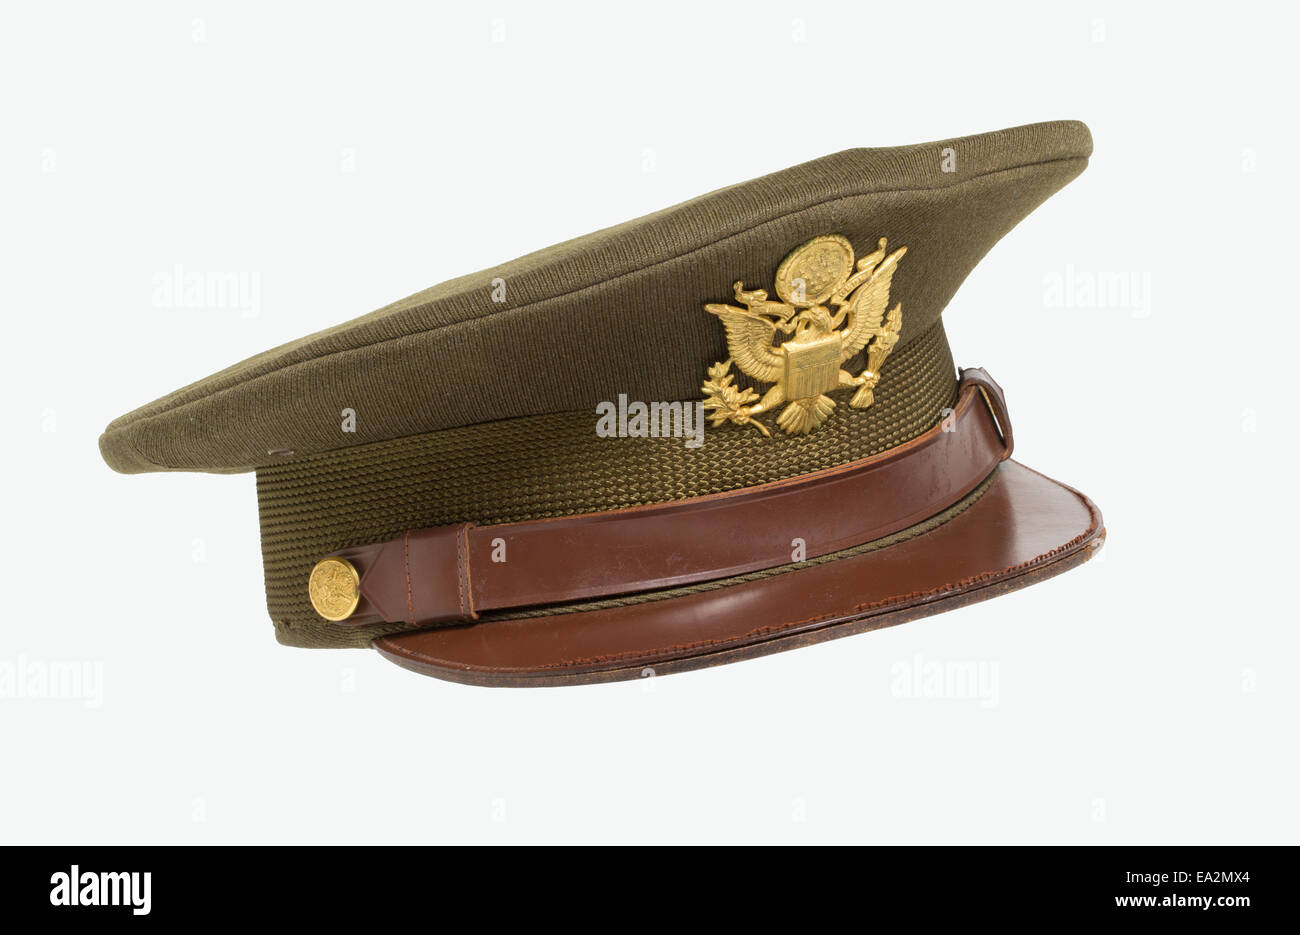 Eine olive drab Offizier Hut getragen von einem amerikanischen Offizier von der 9. United States Army Air Forces USAAF während des zweiten Weltkriegs Stockfoto